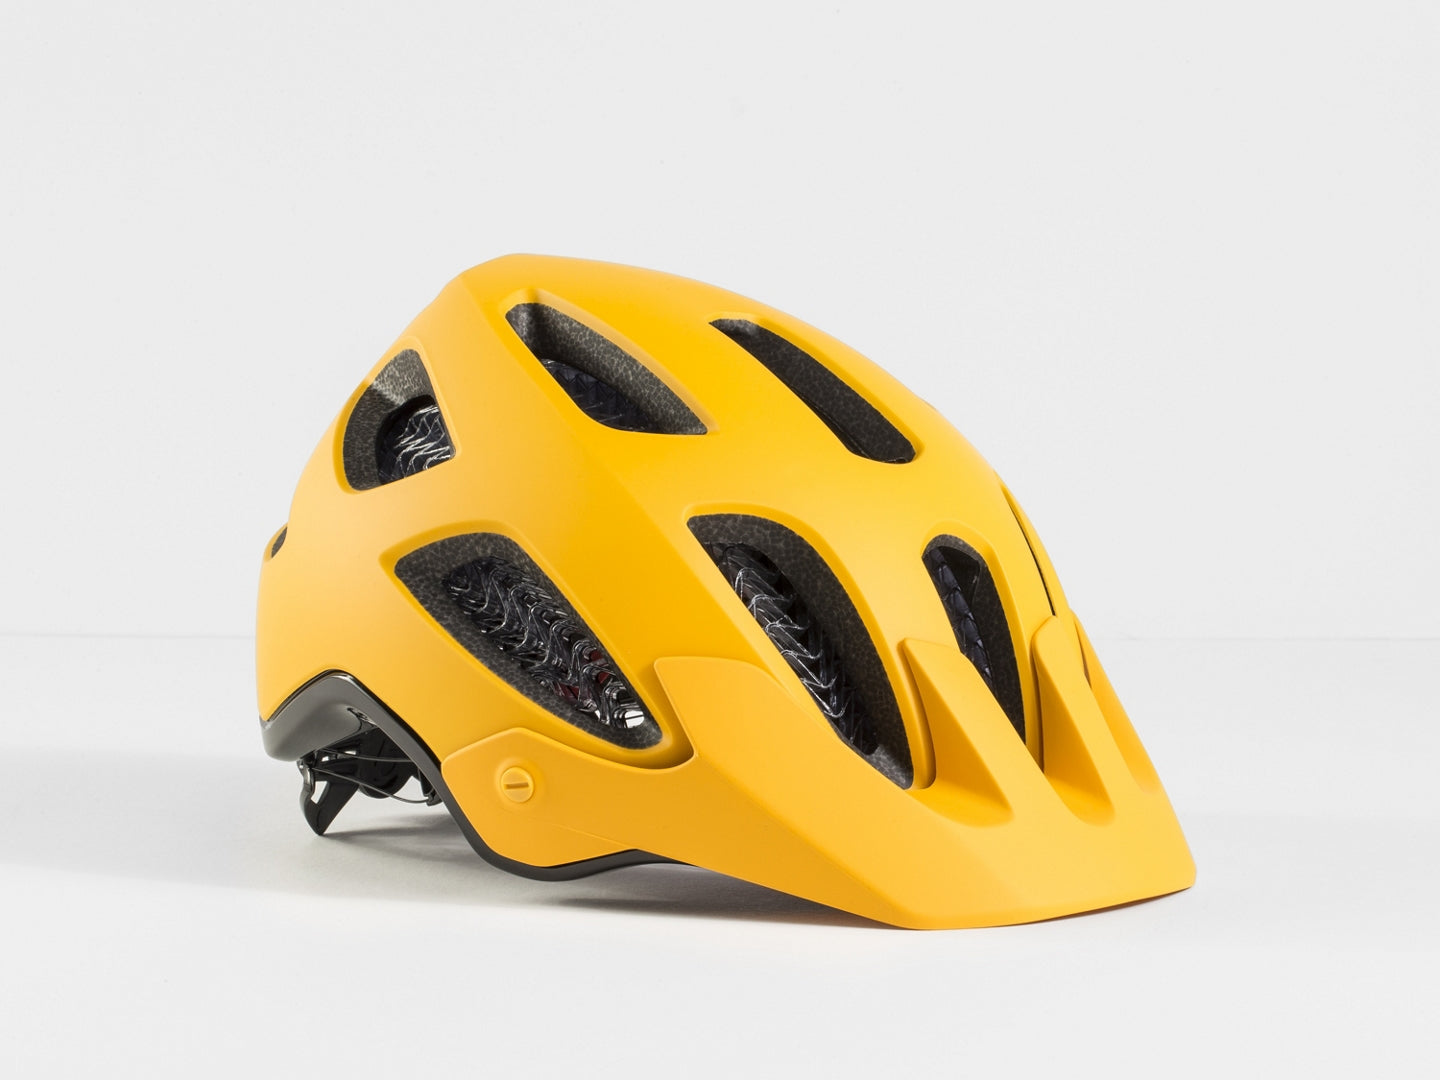 SALE: Bontrager Rally WaveCel Mountain Bike Helmet